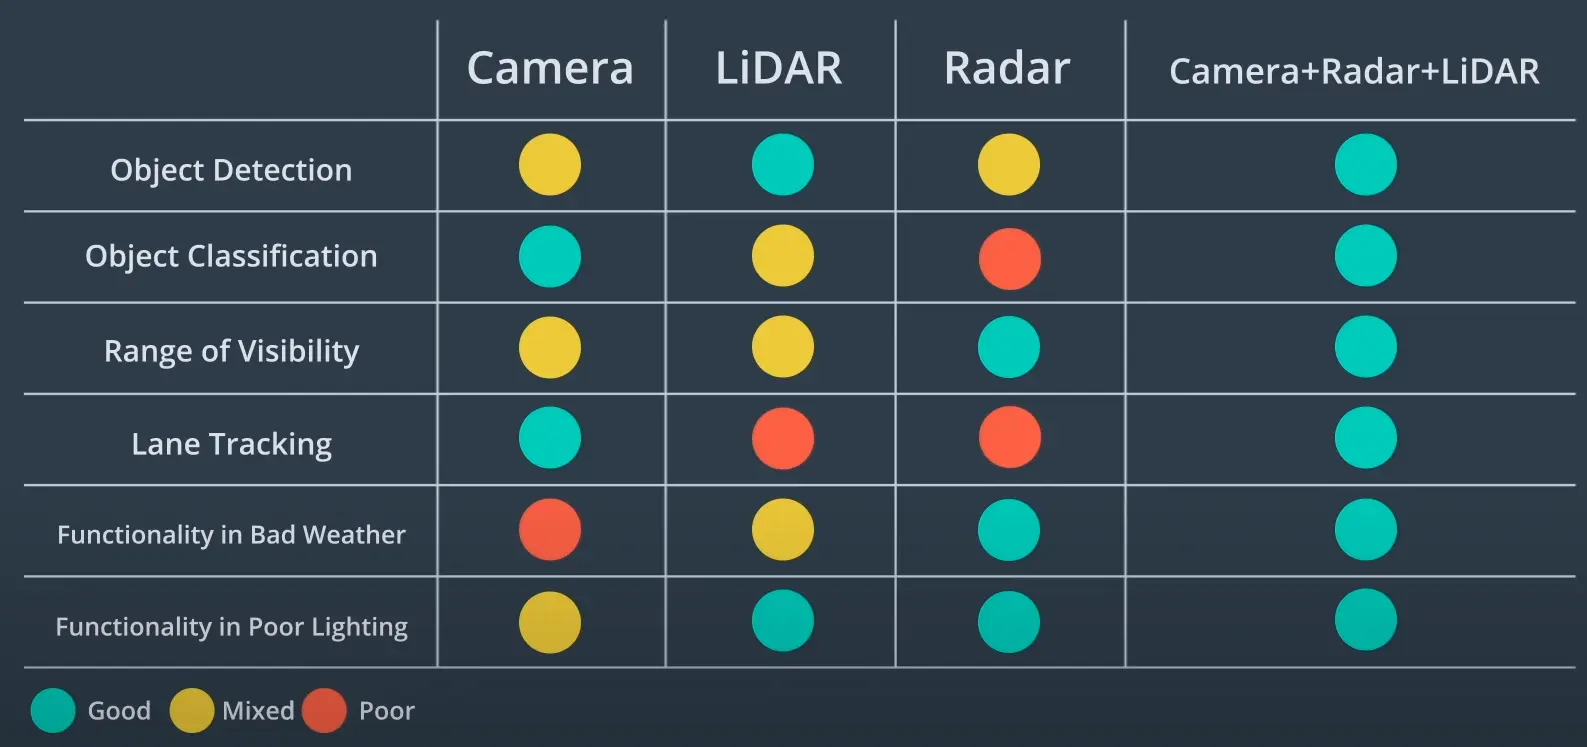 Sensor data comparison - Camera vs LiDAR vs Radar vs Sensor fusion